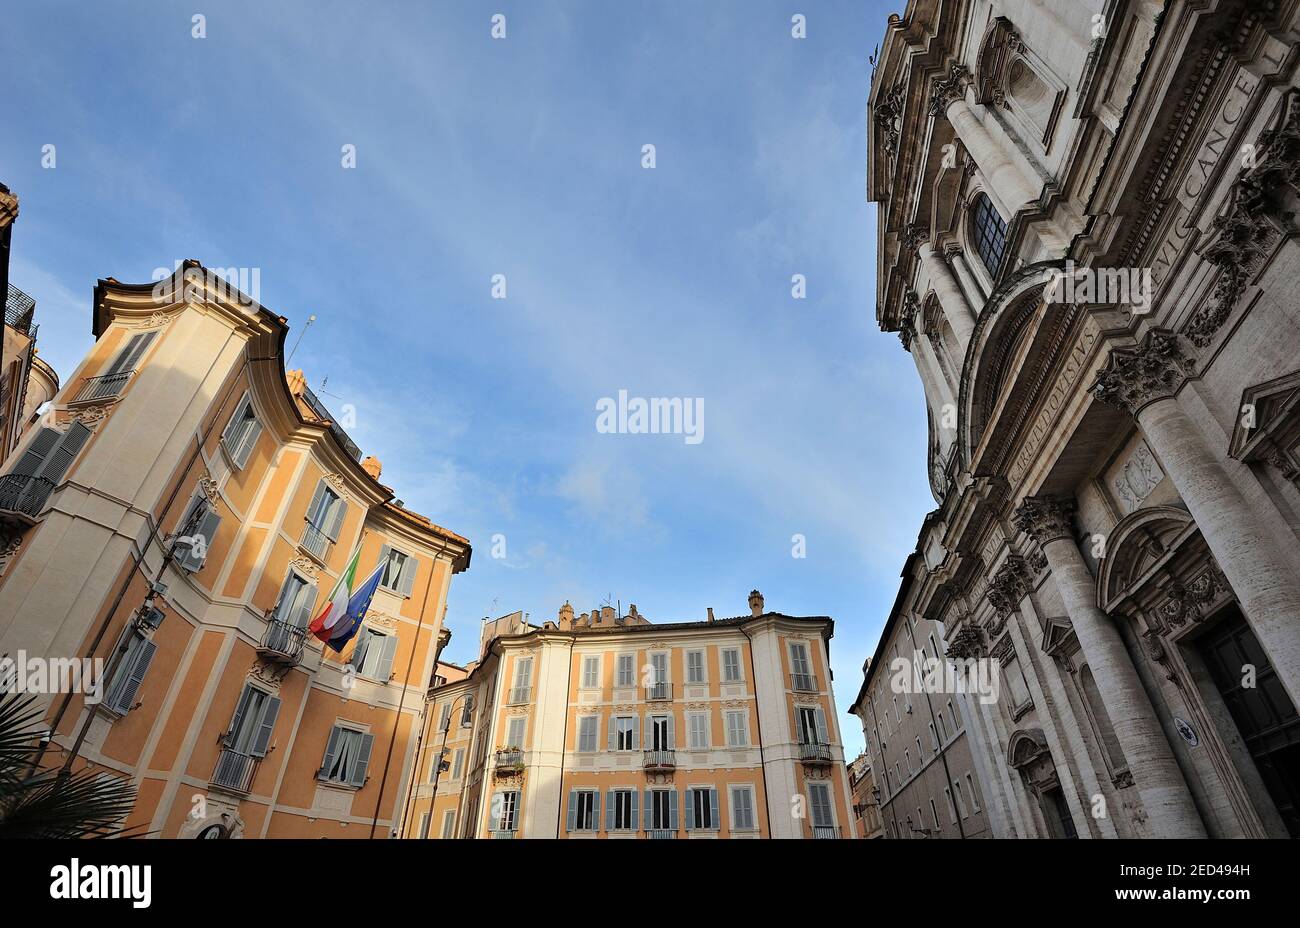 Italy, Rome, Piazza di Sant'ignazio, church of Sant'ignazio and rococo buildings (architect Filippo Raguzzini) Stock Photo